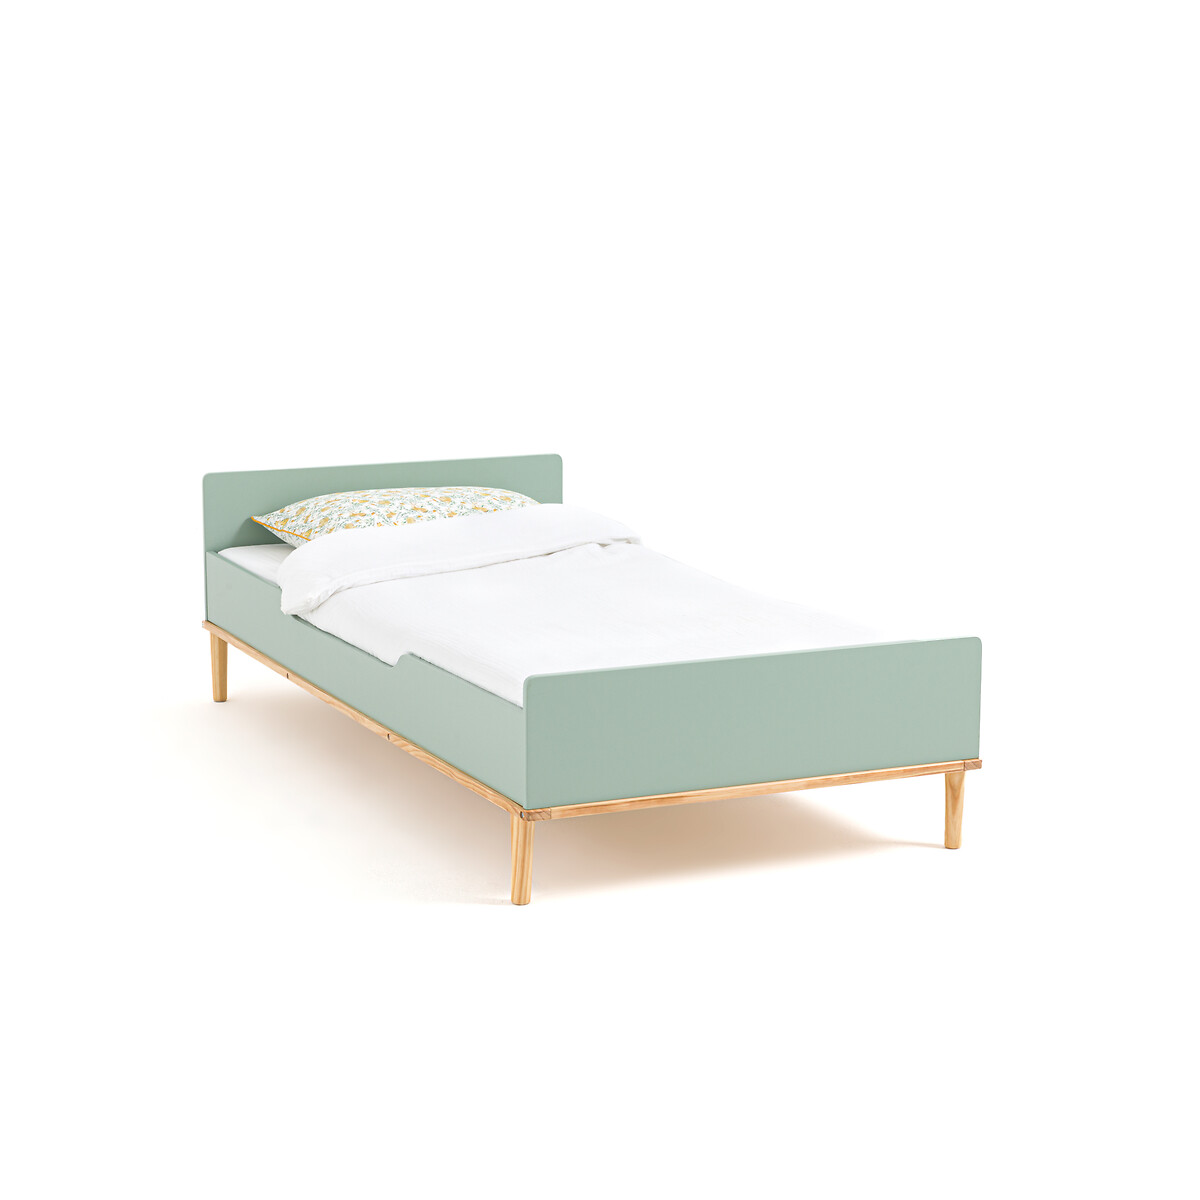 кровать детская из ротанга albin 90 x 190 см бежевый Кровать детская JIMI 90 x 190 см зеленый